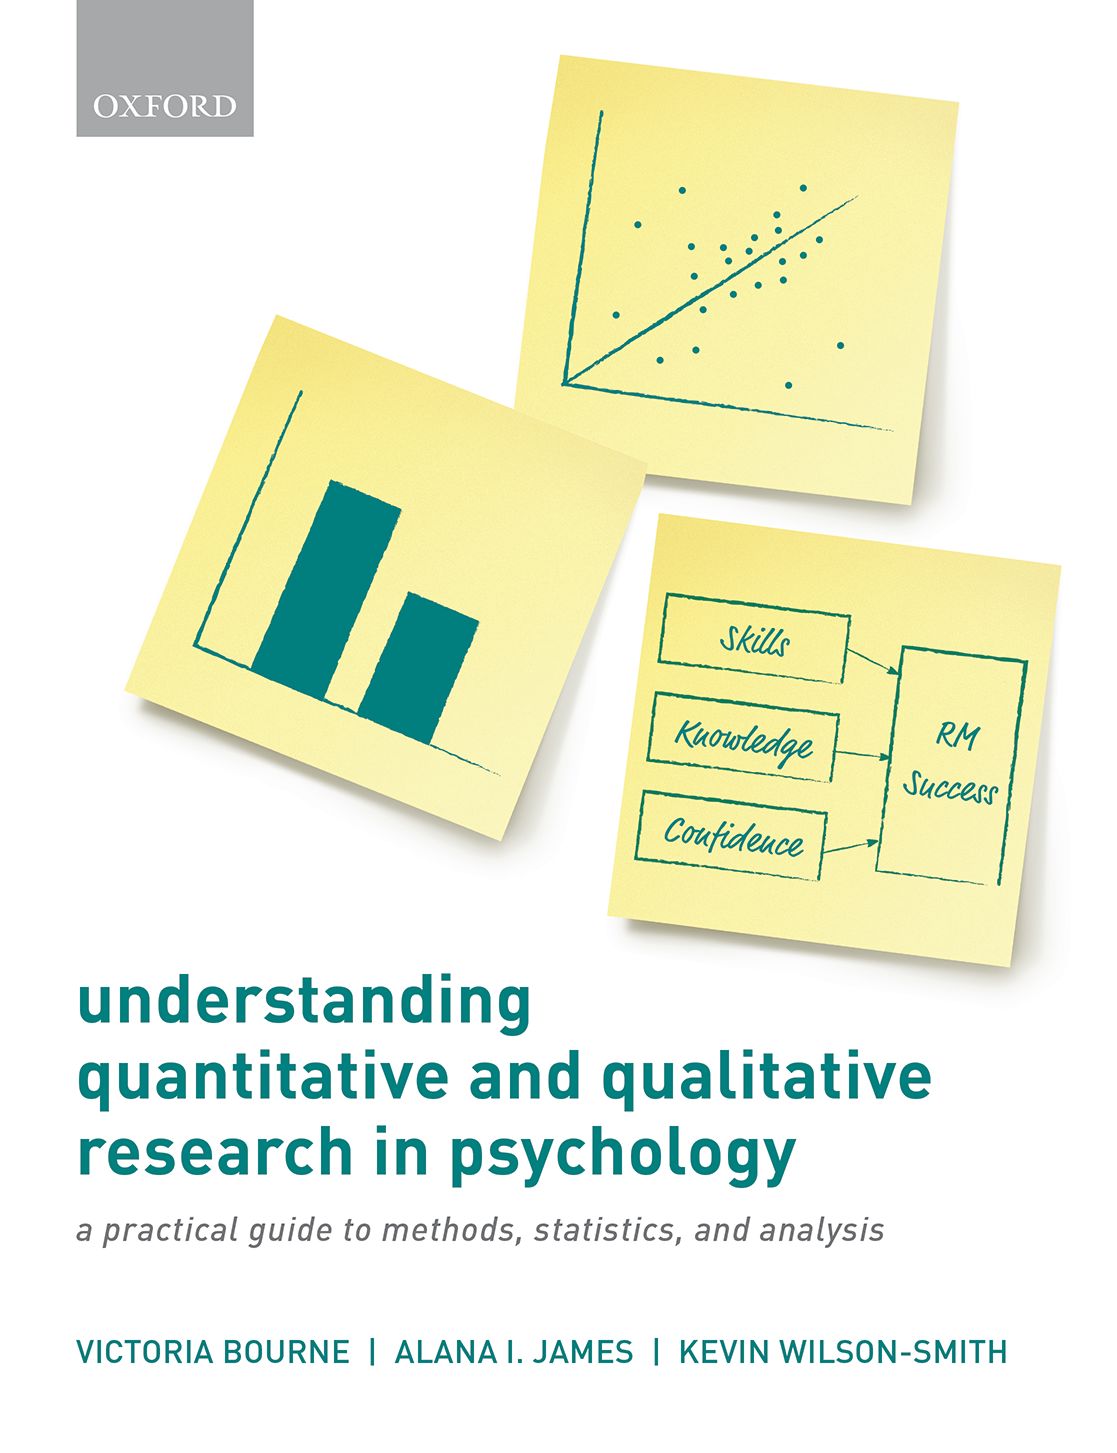 quantitative research methods